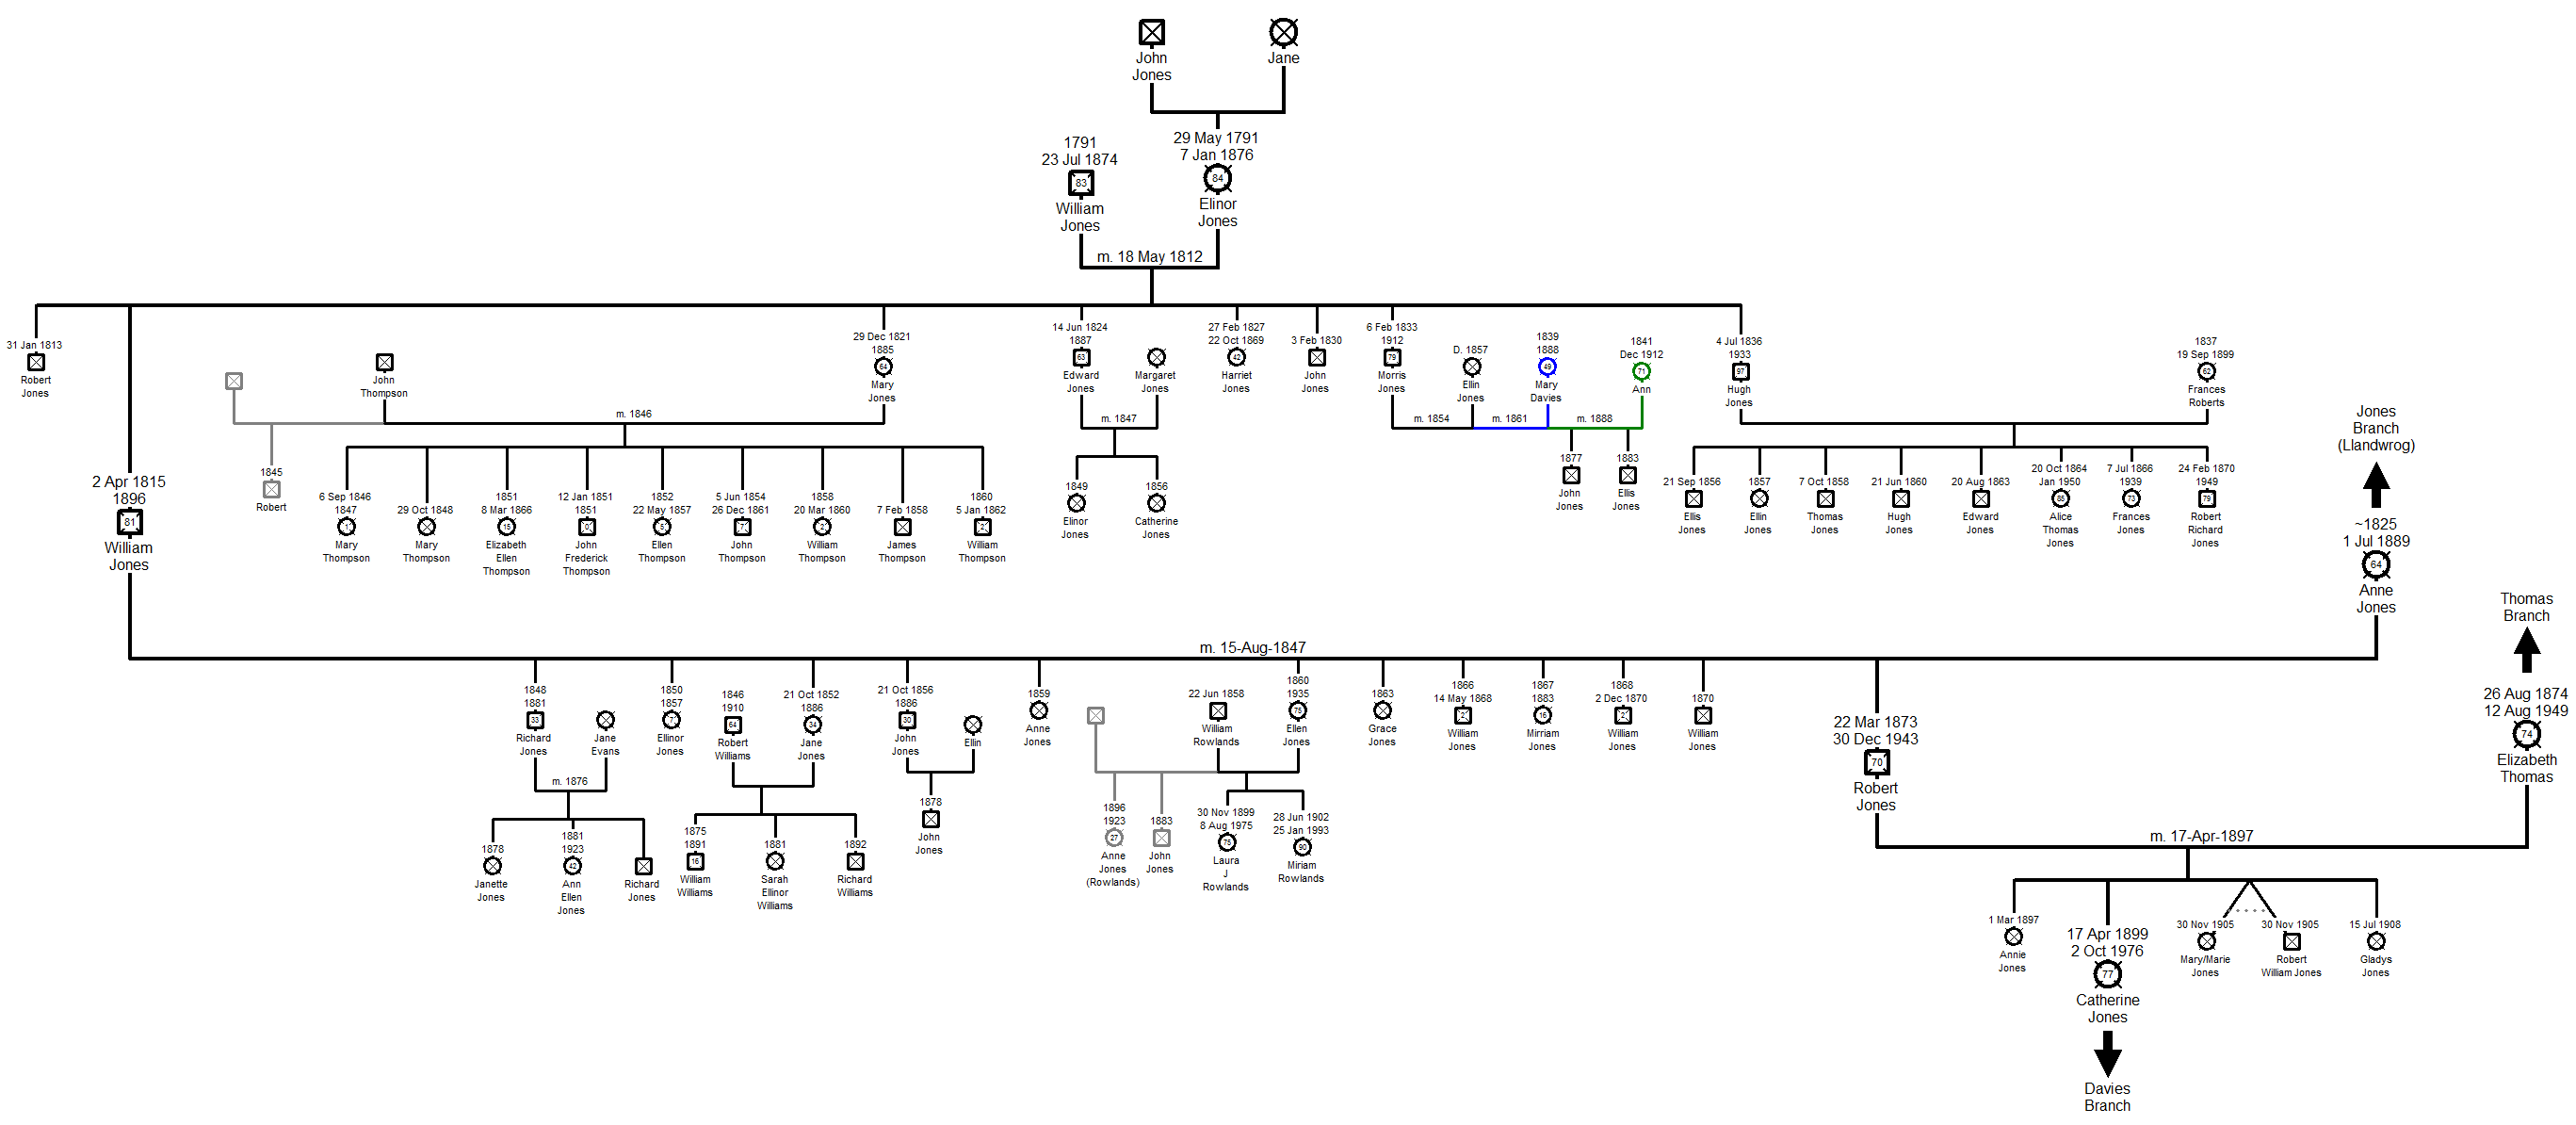 Family Tree of the Pwllheli Jones Branch